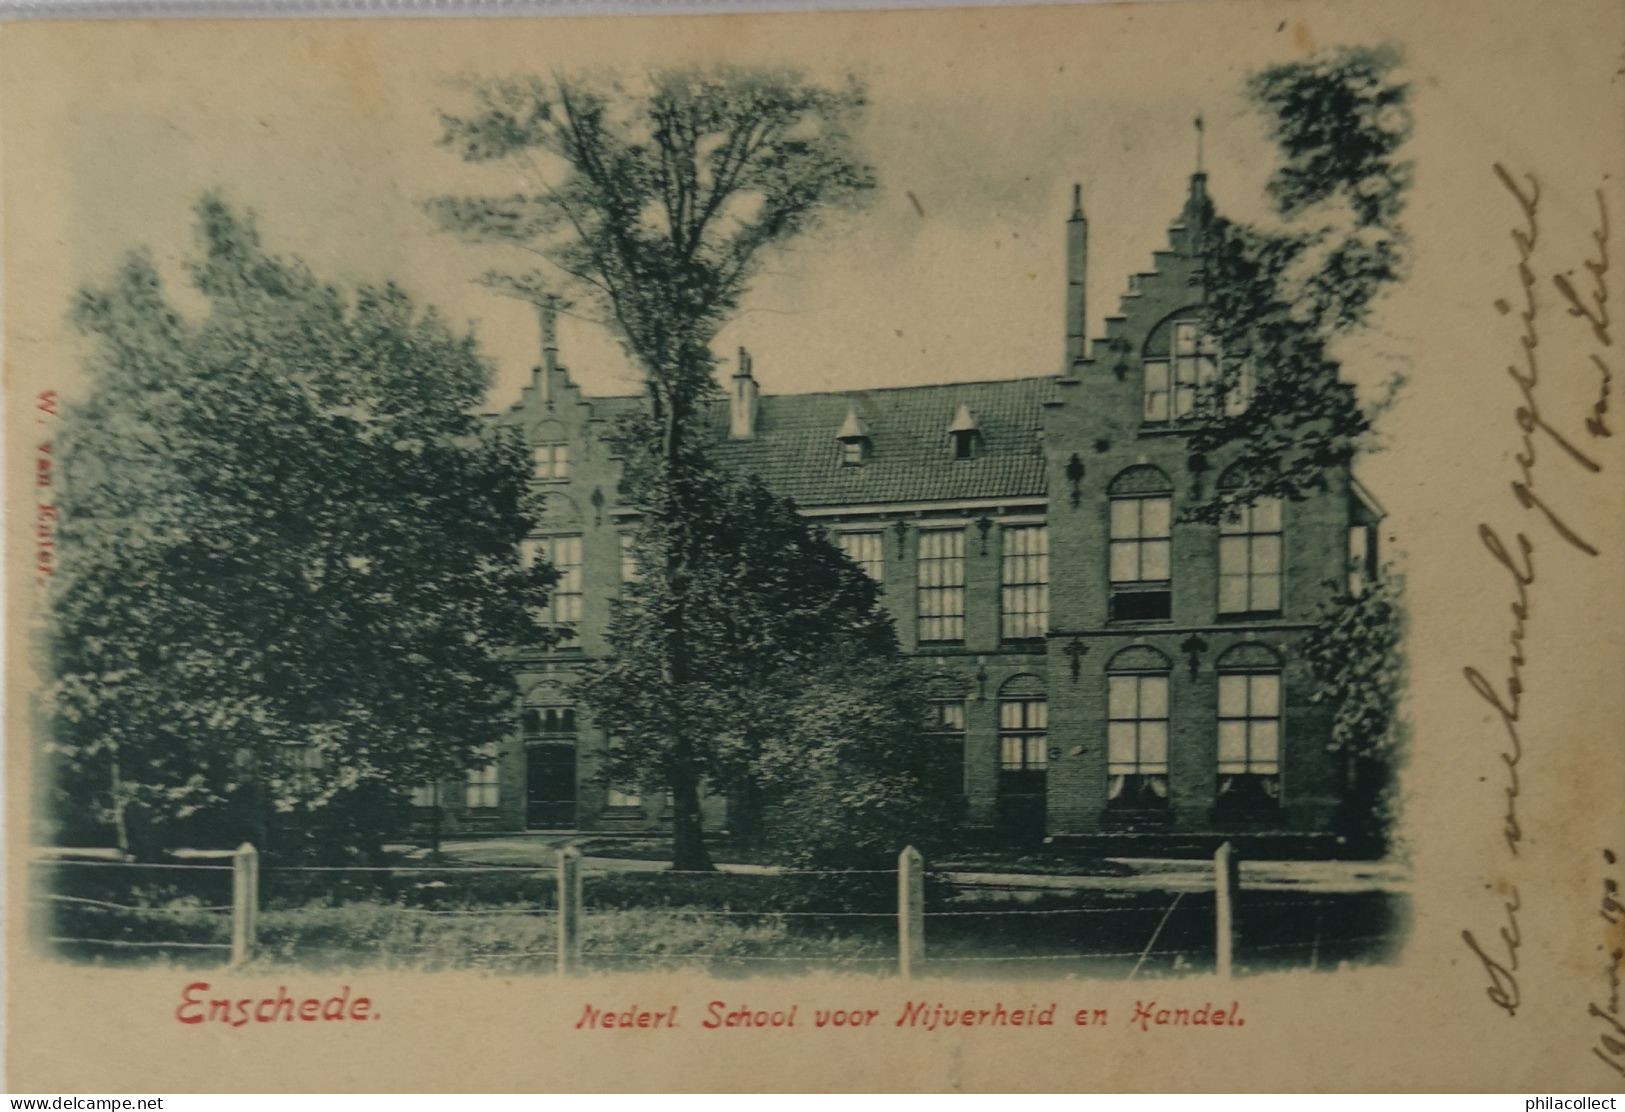 Enschede (Ov.) Nederl. School Voor Nijverheid En Handel 1900! Iets Vlekkig Randen - Enschede